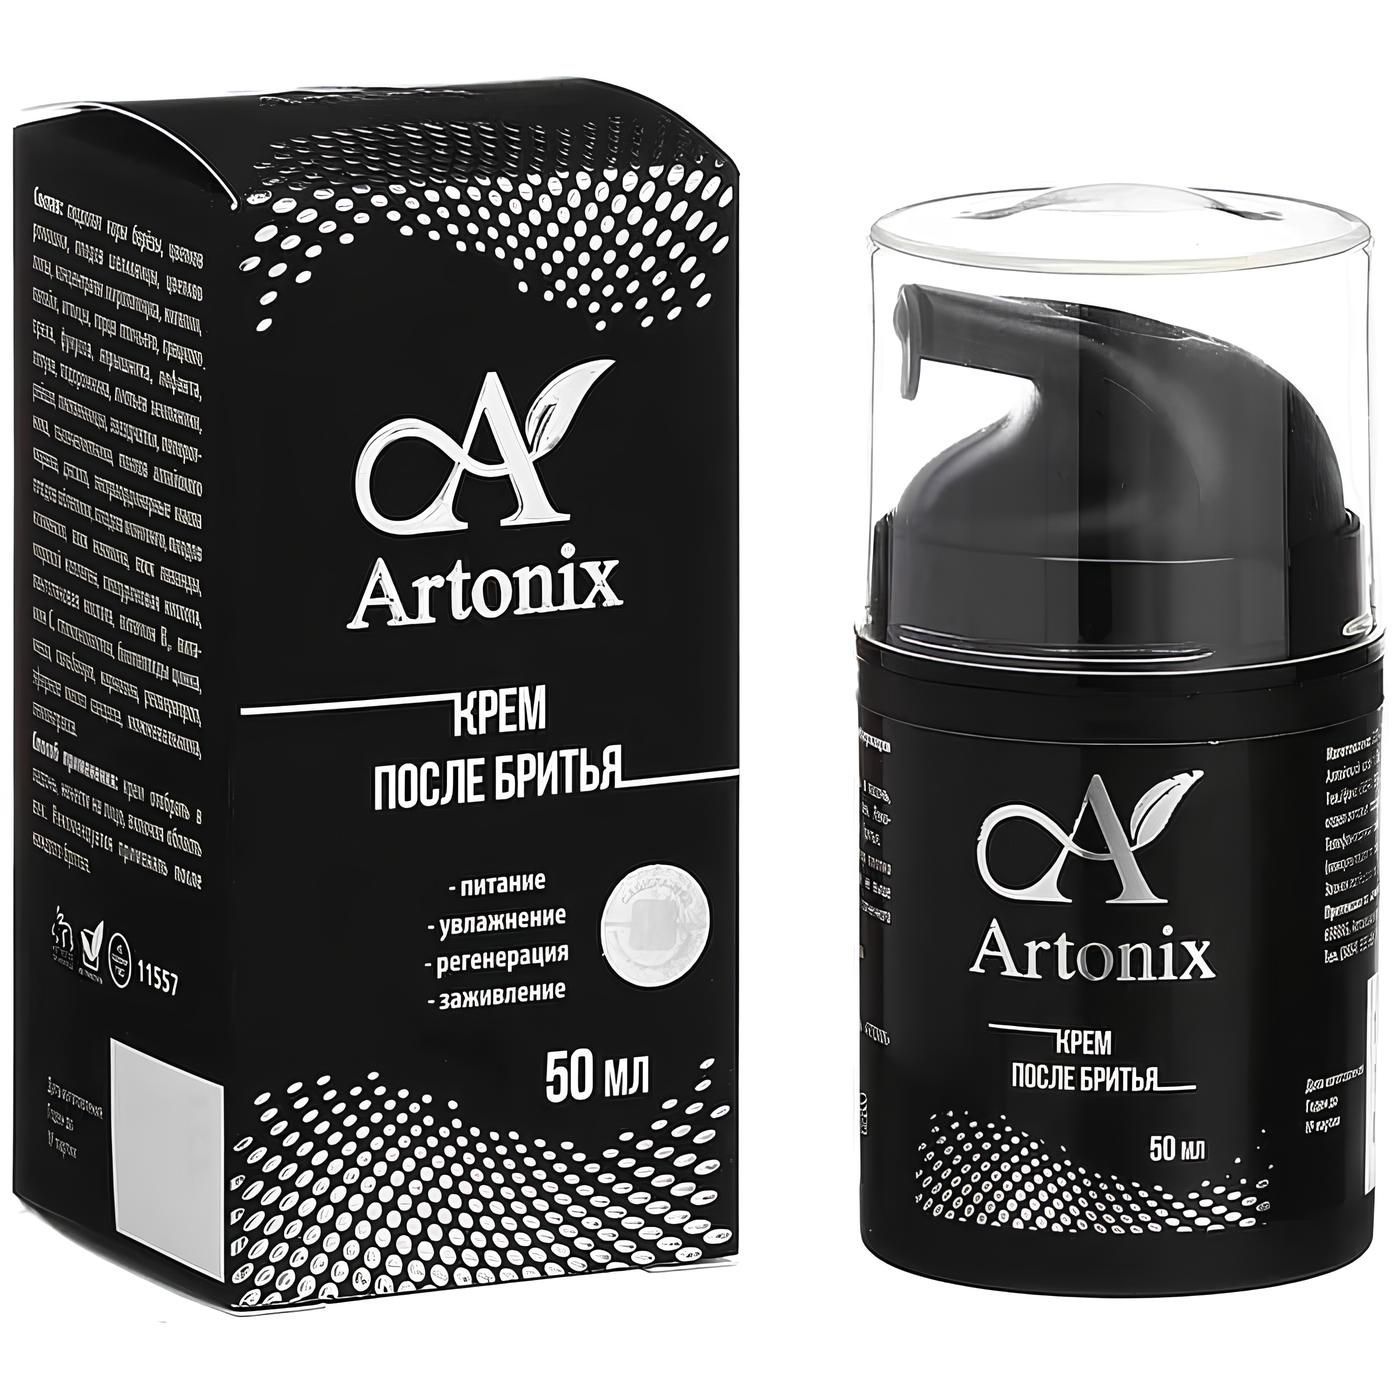 Artonix (Артоникс) крем после бритья, 50 мл., Сашера-Мед